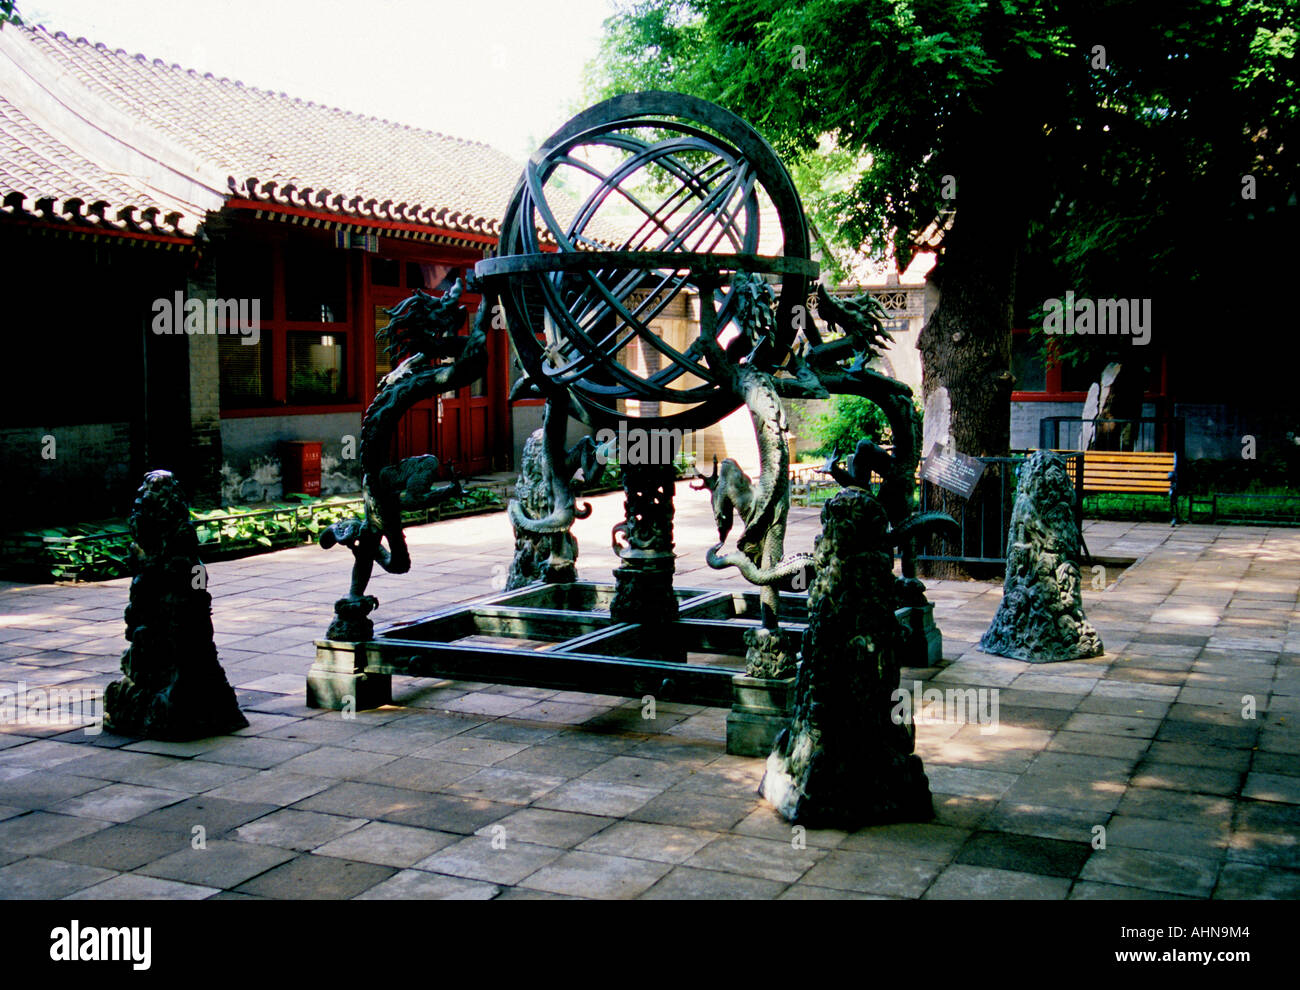 Ancien Observatoire de Beijing sphère armillaire bronze instrument astronomique construit en 1439 par les Jésuites Banque D'Images